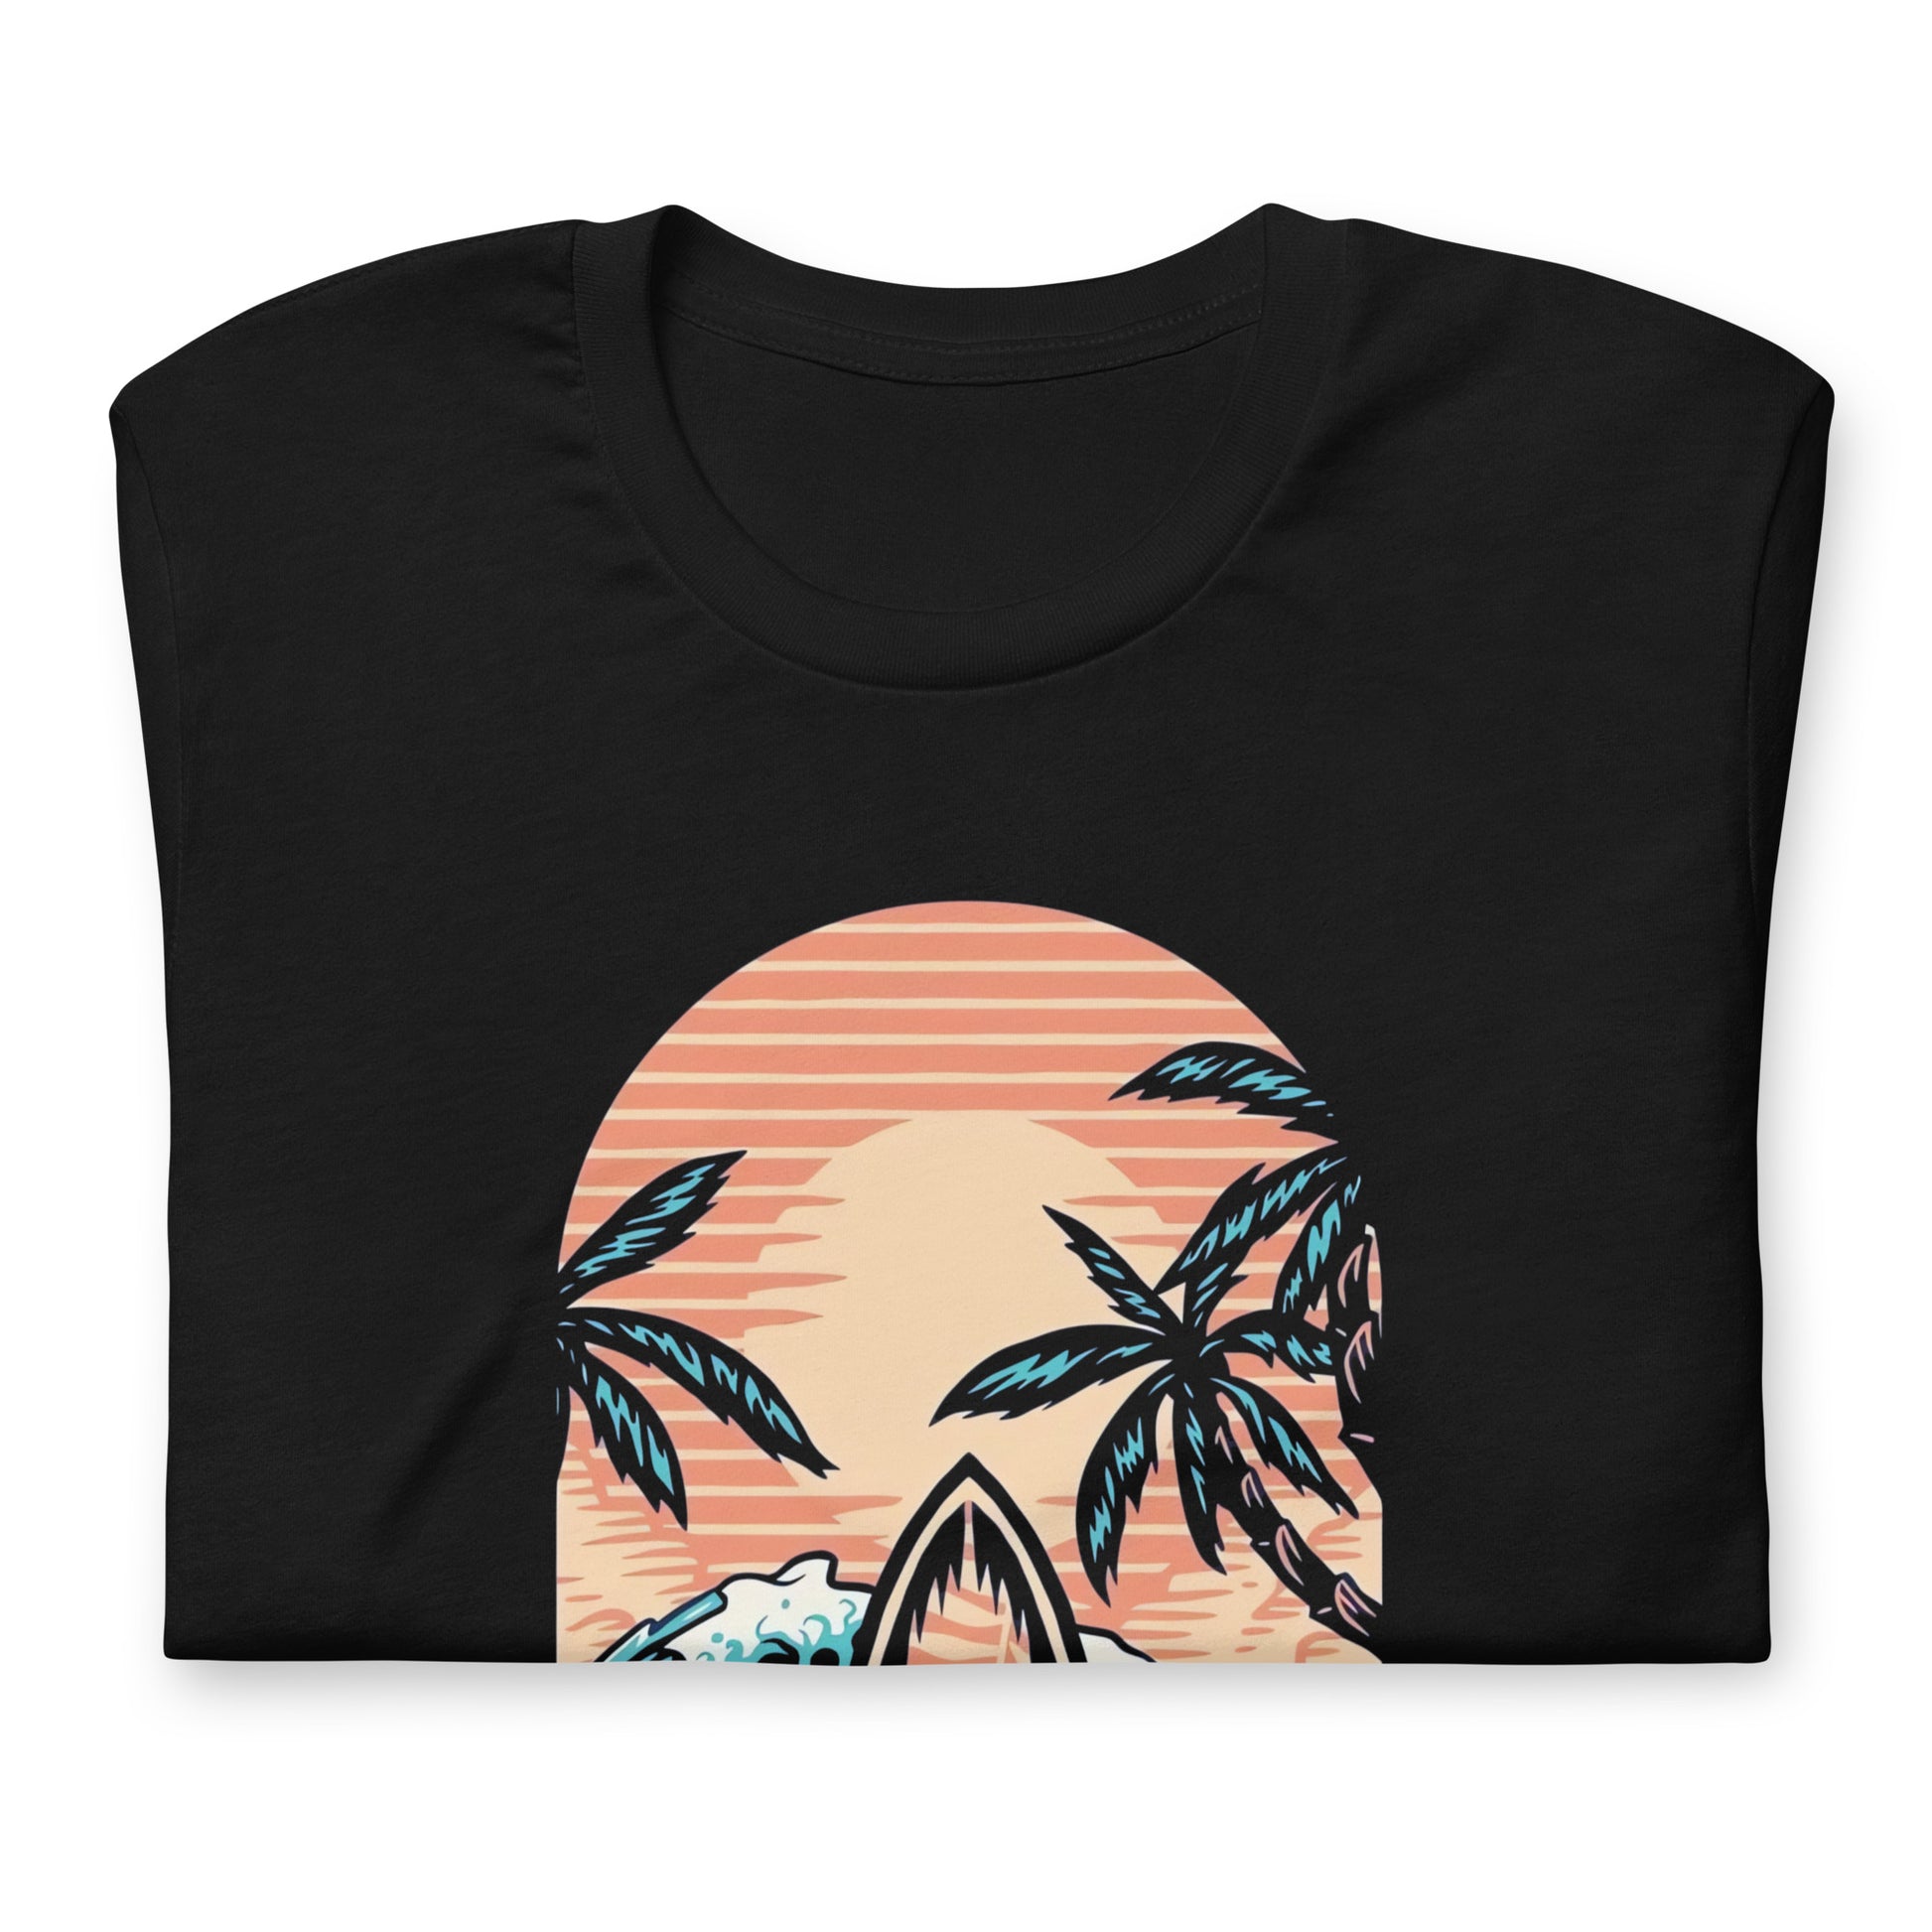 Consigue el mejor merch de El Paredón: camisetas, sudaderas y más con estilo único. Compra ahora: Playera de Summer Sessions Surf